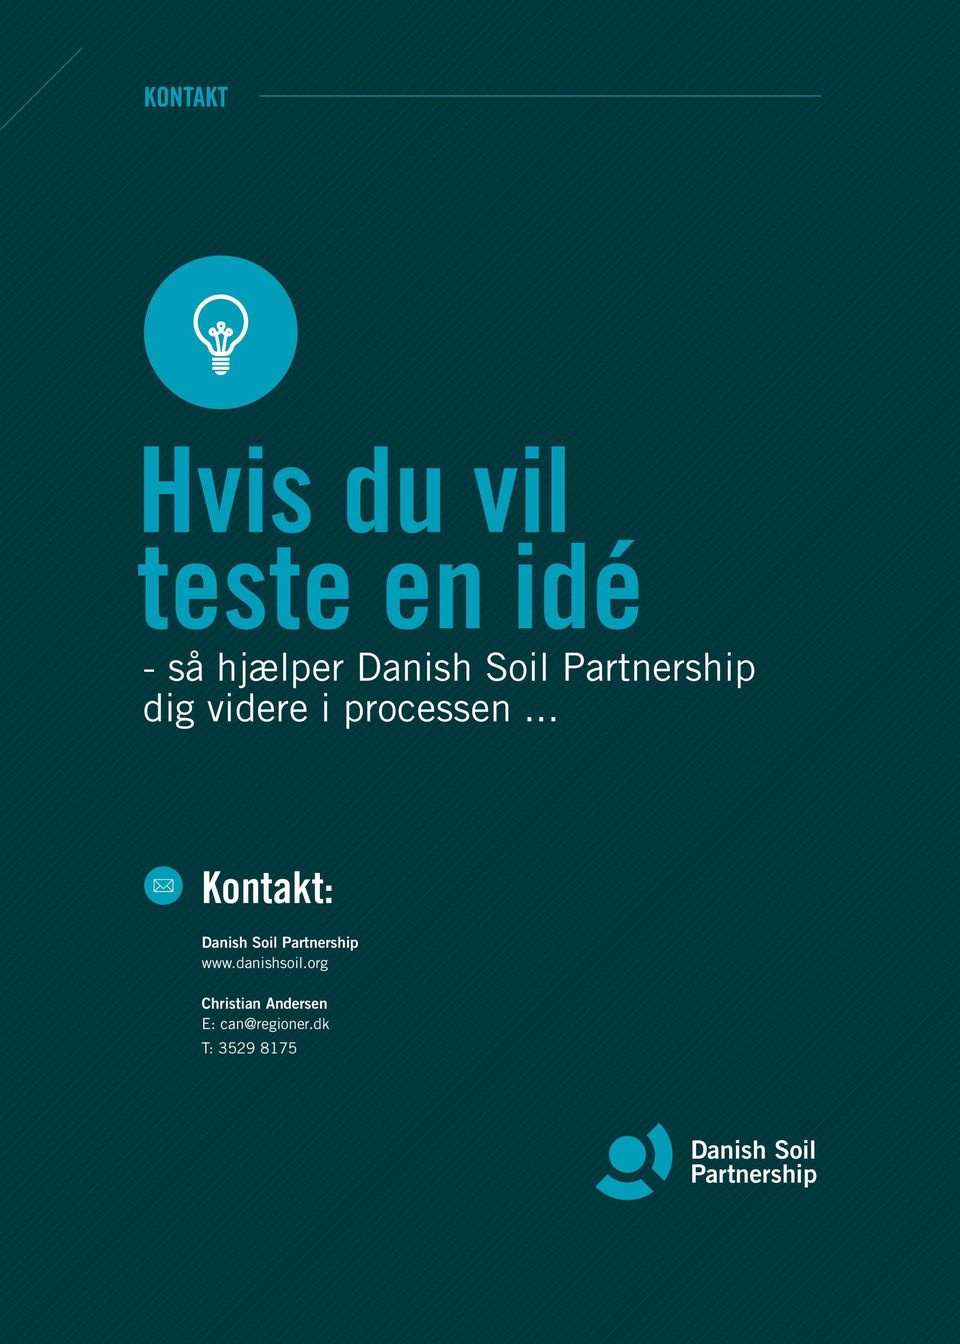 .. Kontakt: Danish Soil Partnership www.danishsoil.